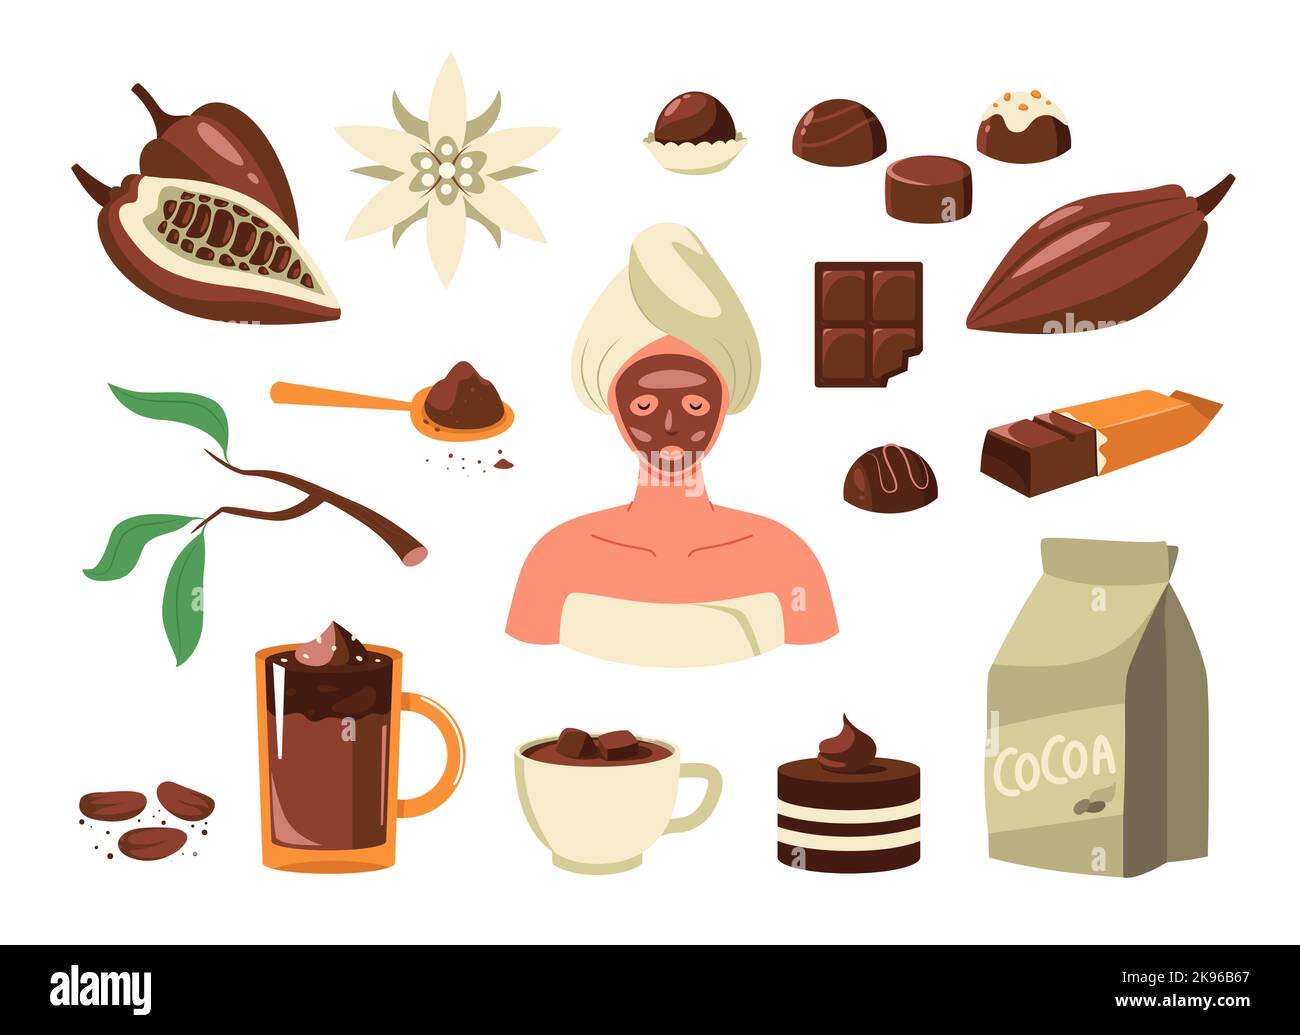 Kakaoprodukte. Cartoon Kakaobohnen Pulver für mil dunkle Schokolade Getränk Kuchen Süßigkeiten bar, süße Elemente flach Stil. Vektor-isolierte Sammlung Stock Vektor